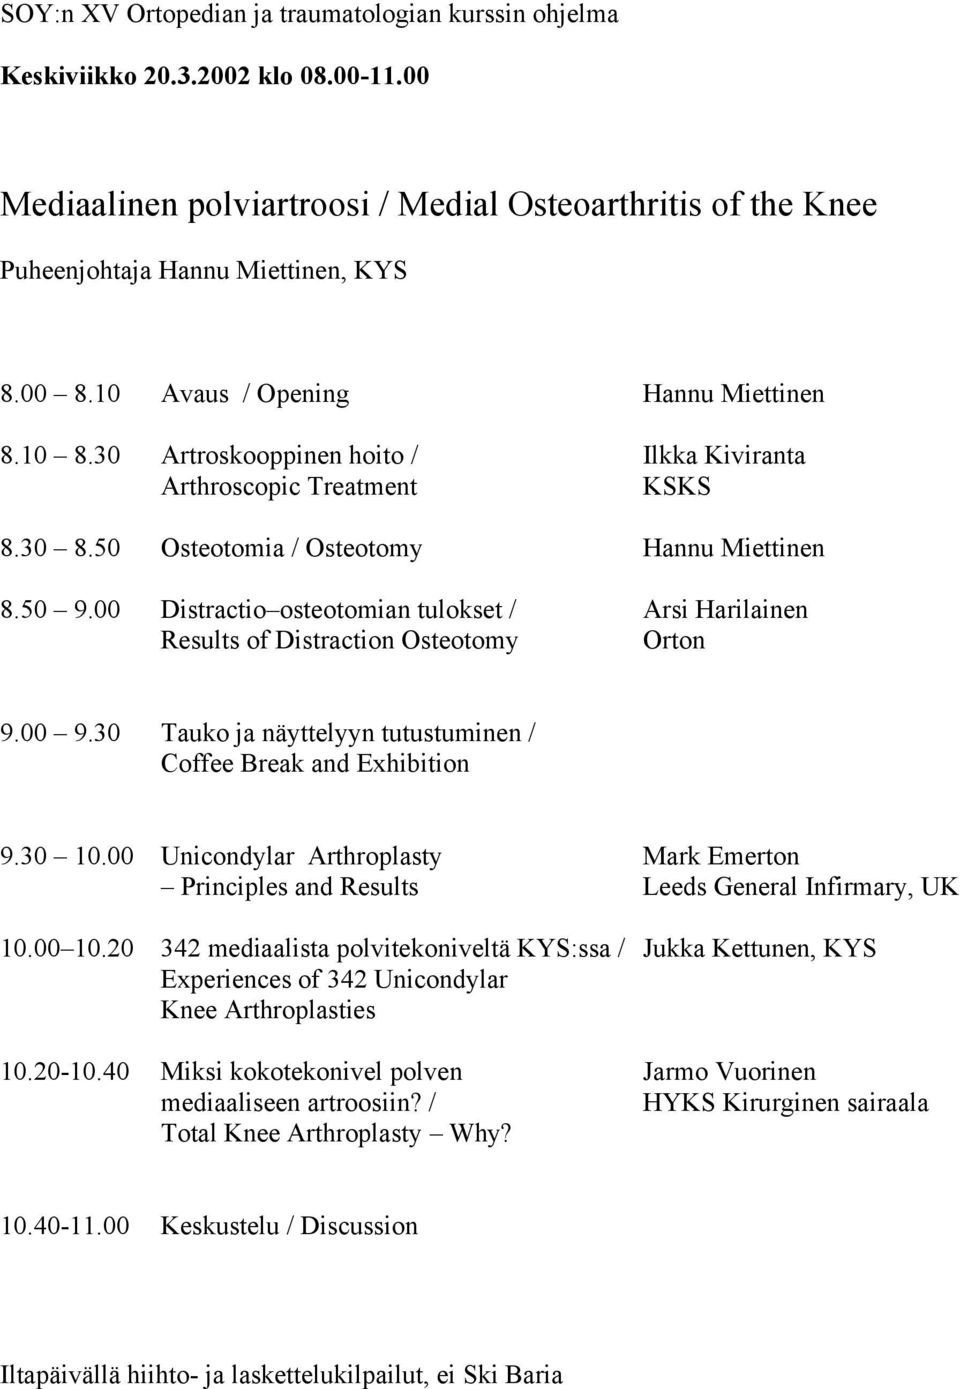 00 Distractio osteotomian tulokset / Arsi Harilainen Results of Distraction Osteotomy Orton 9.00 9.30 Tauko ja näyttelyyn tutustuminen / Coffee Break and Exhibition 9.30 10.